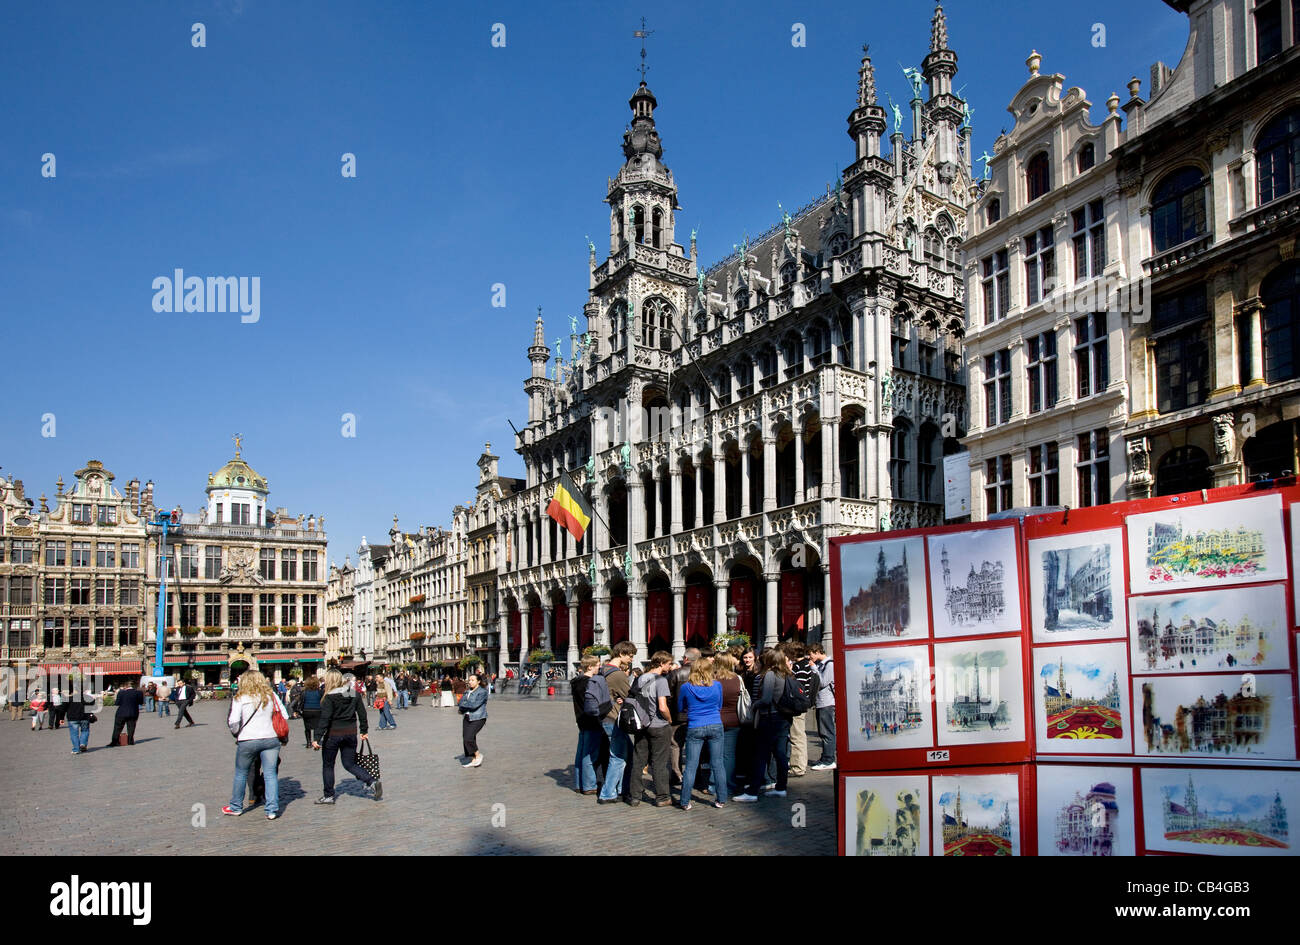 Dessins pour les touristes et Maison du Roi / maison du roi / Broodhuis / Breadhouse, Grand Place/Grote Markt, Bruxelles, Belgique Banque D'Images